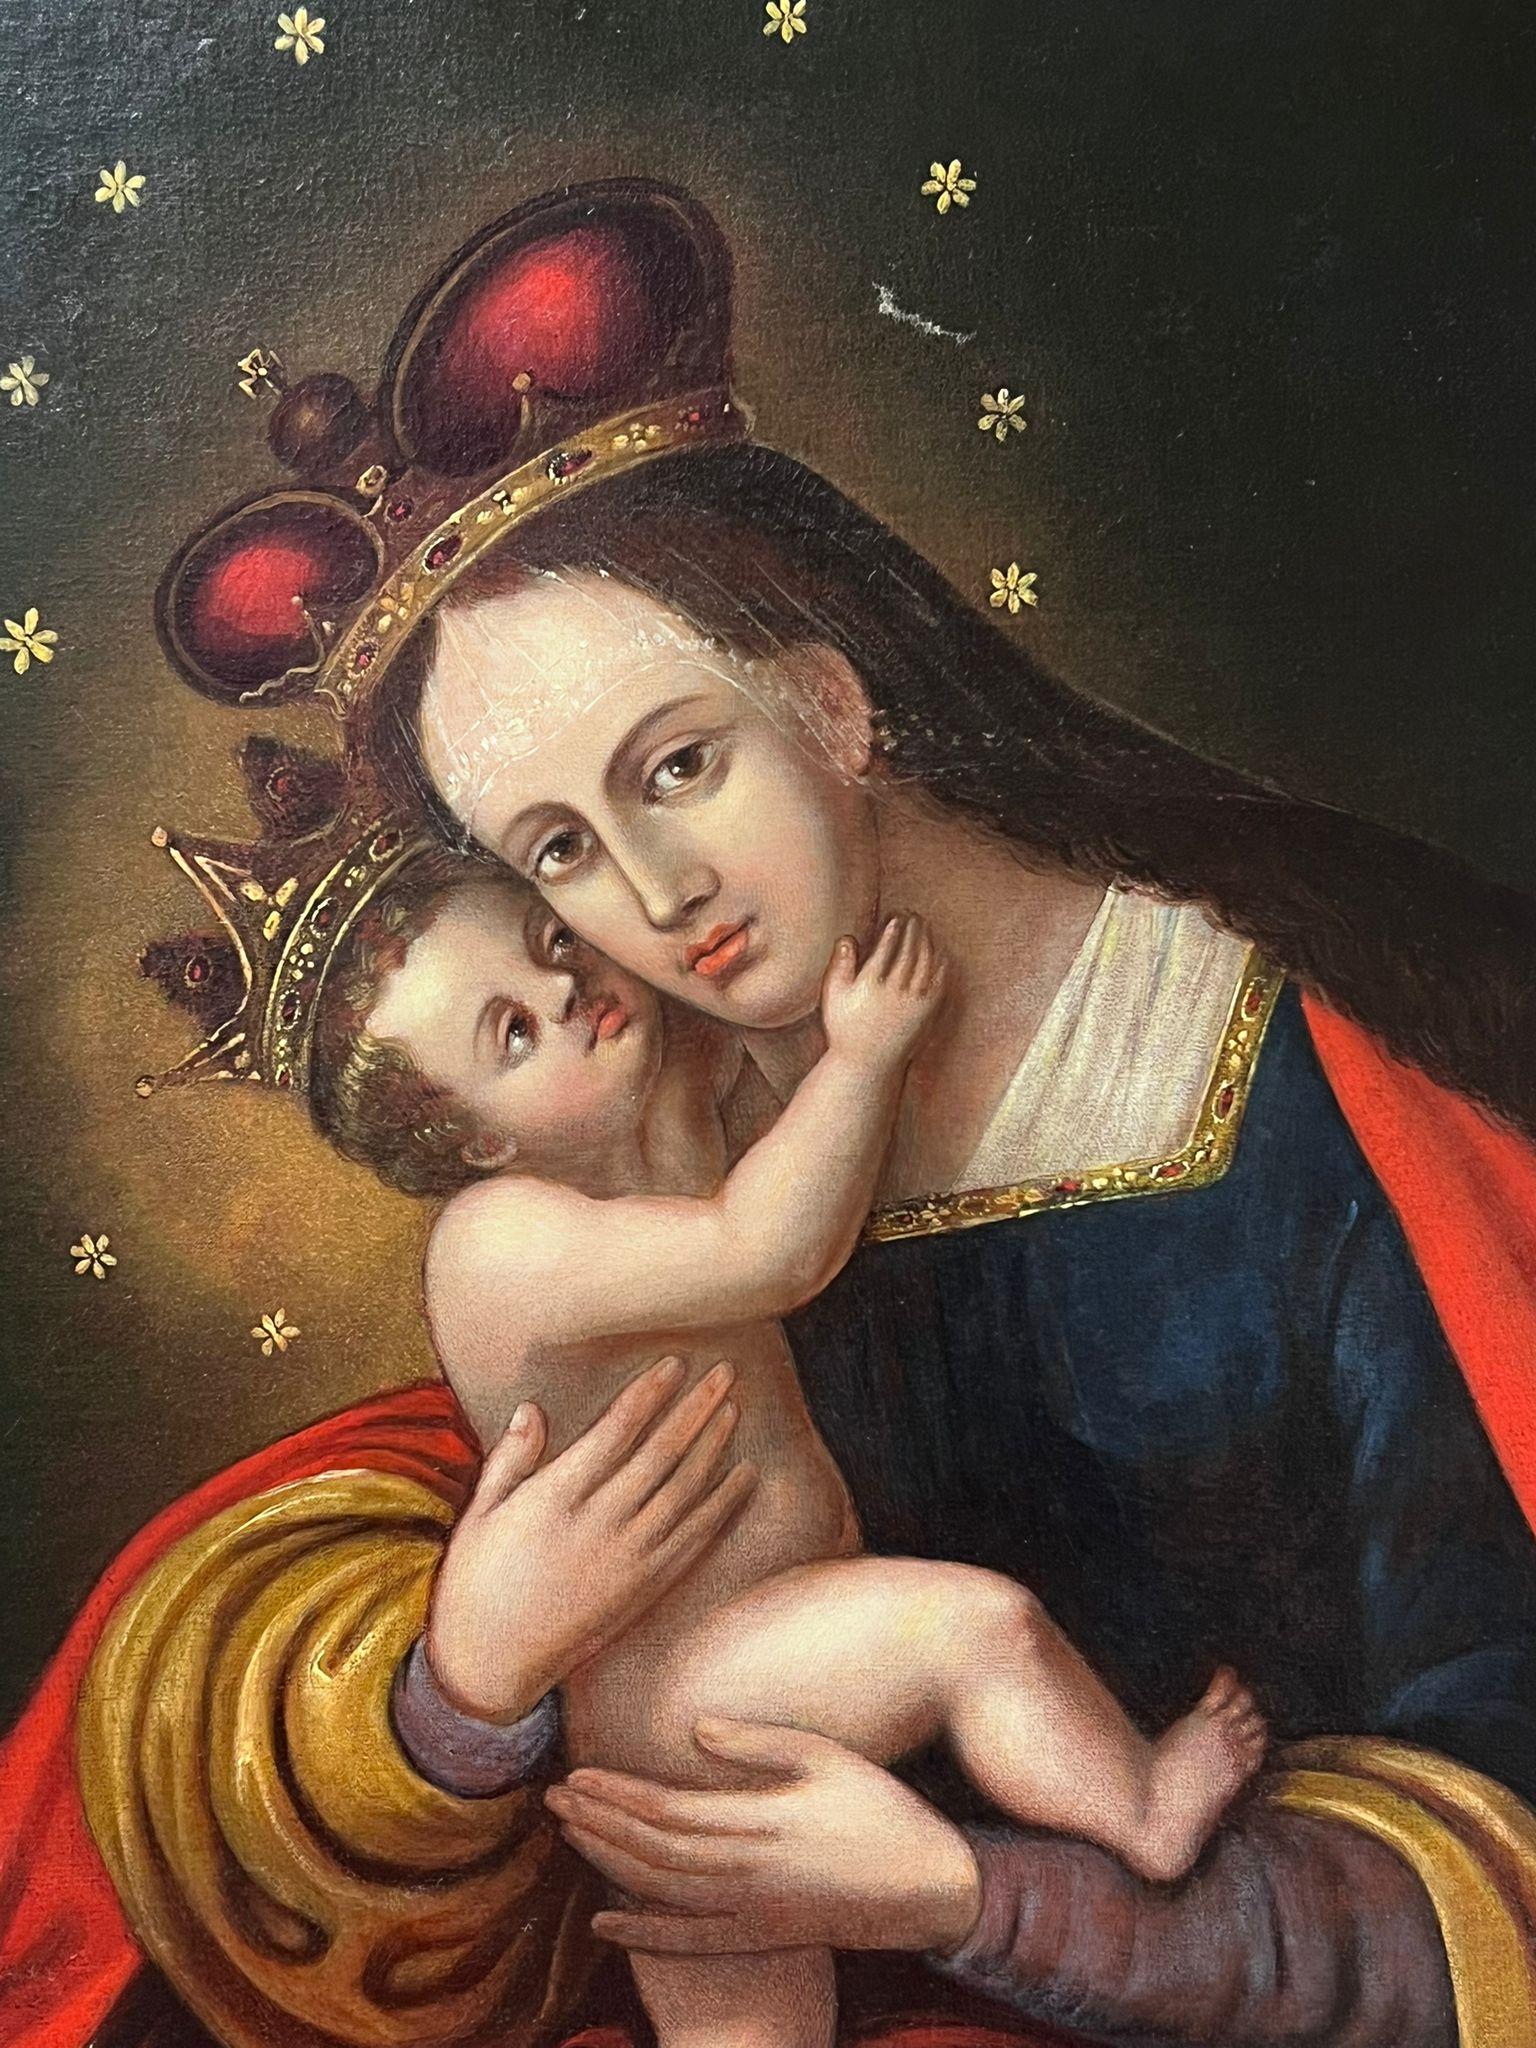 1800's Old Master Ölgemälde Porträt der Madonna & Christ Child  (Alte Meister), Painting, von Eastern European Old Master